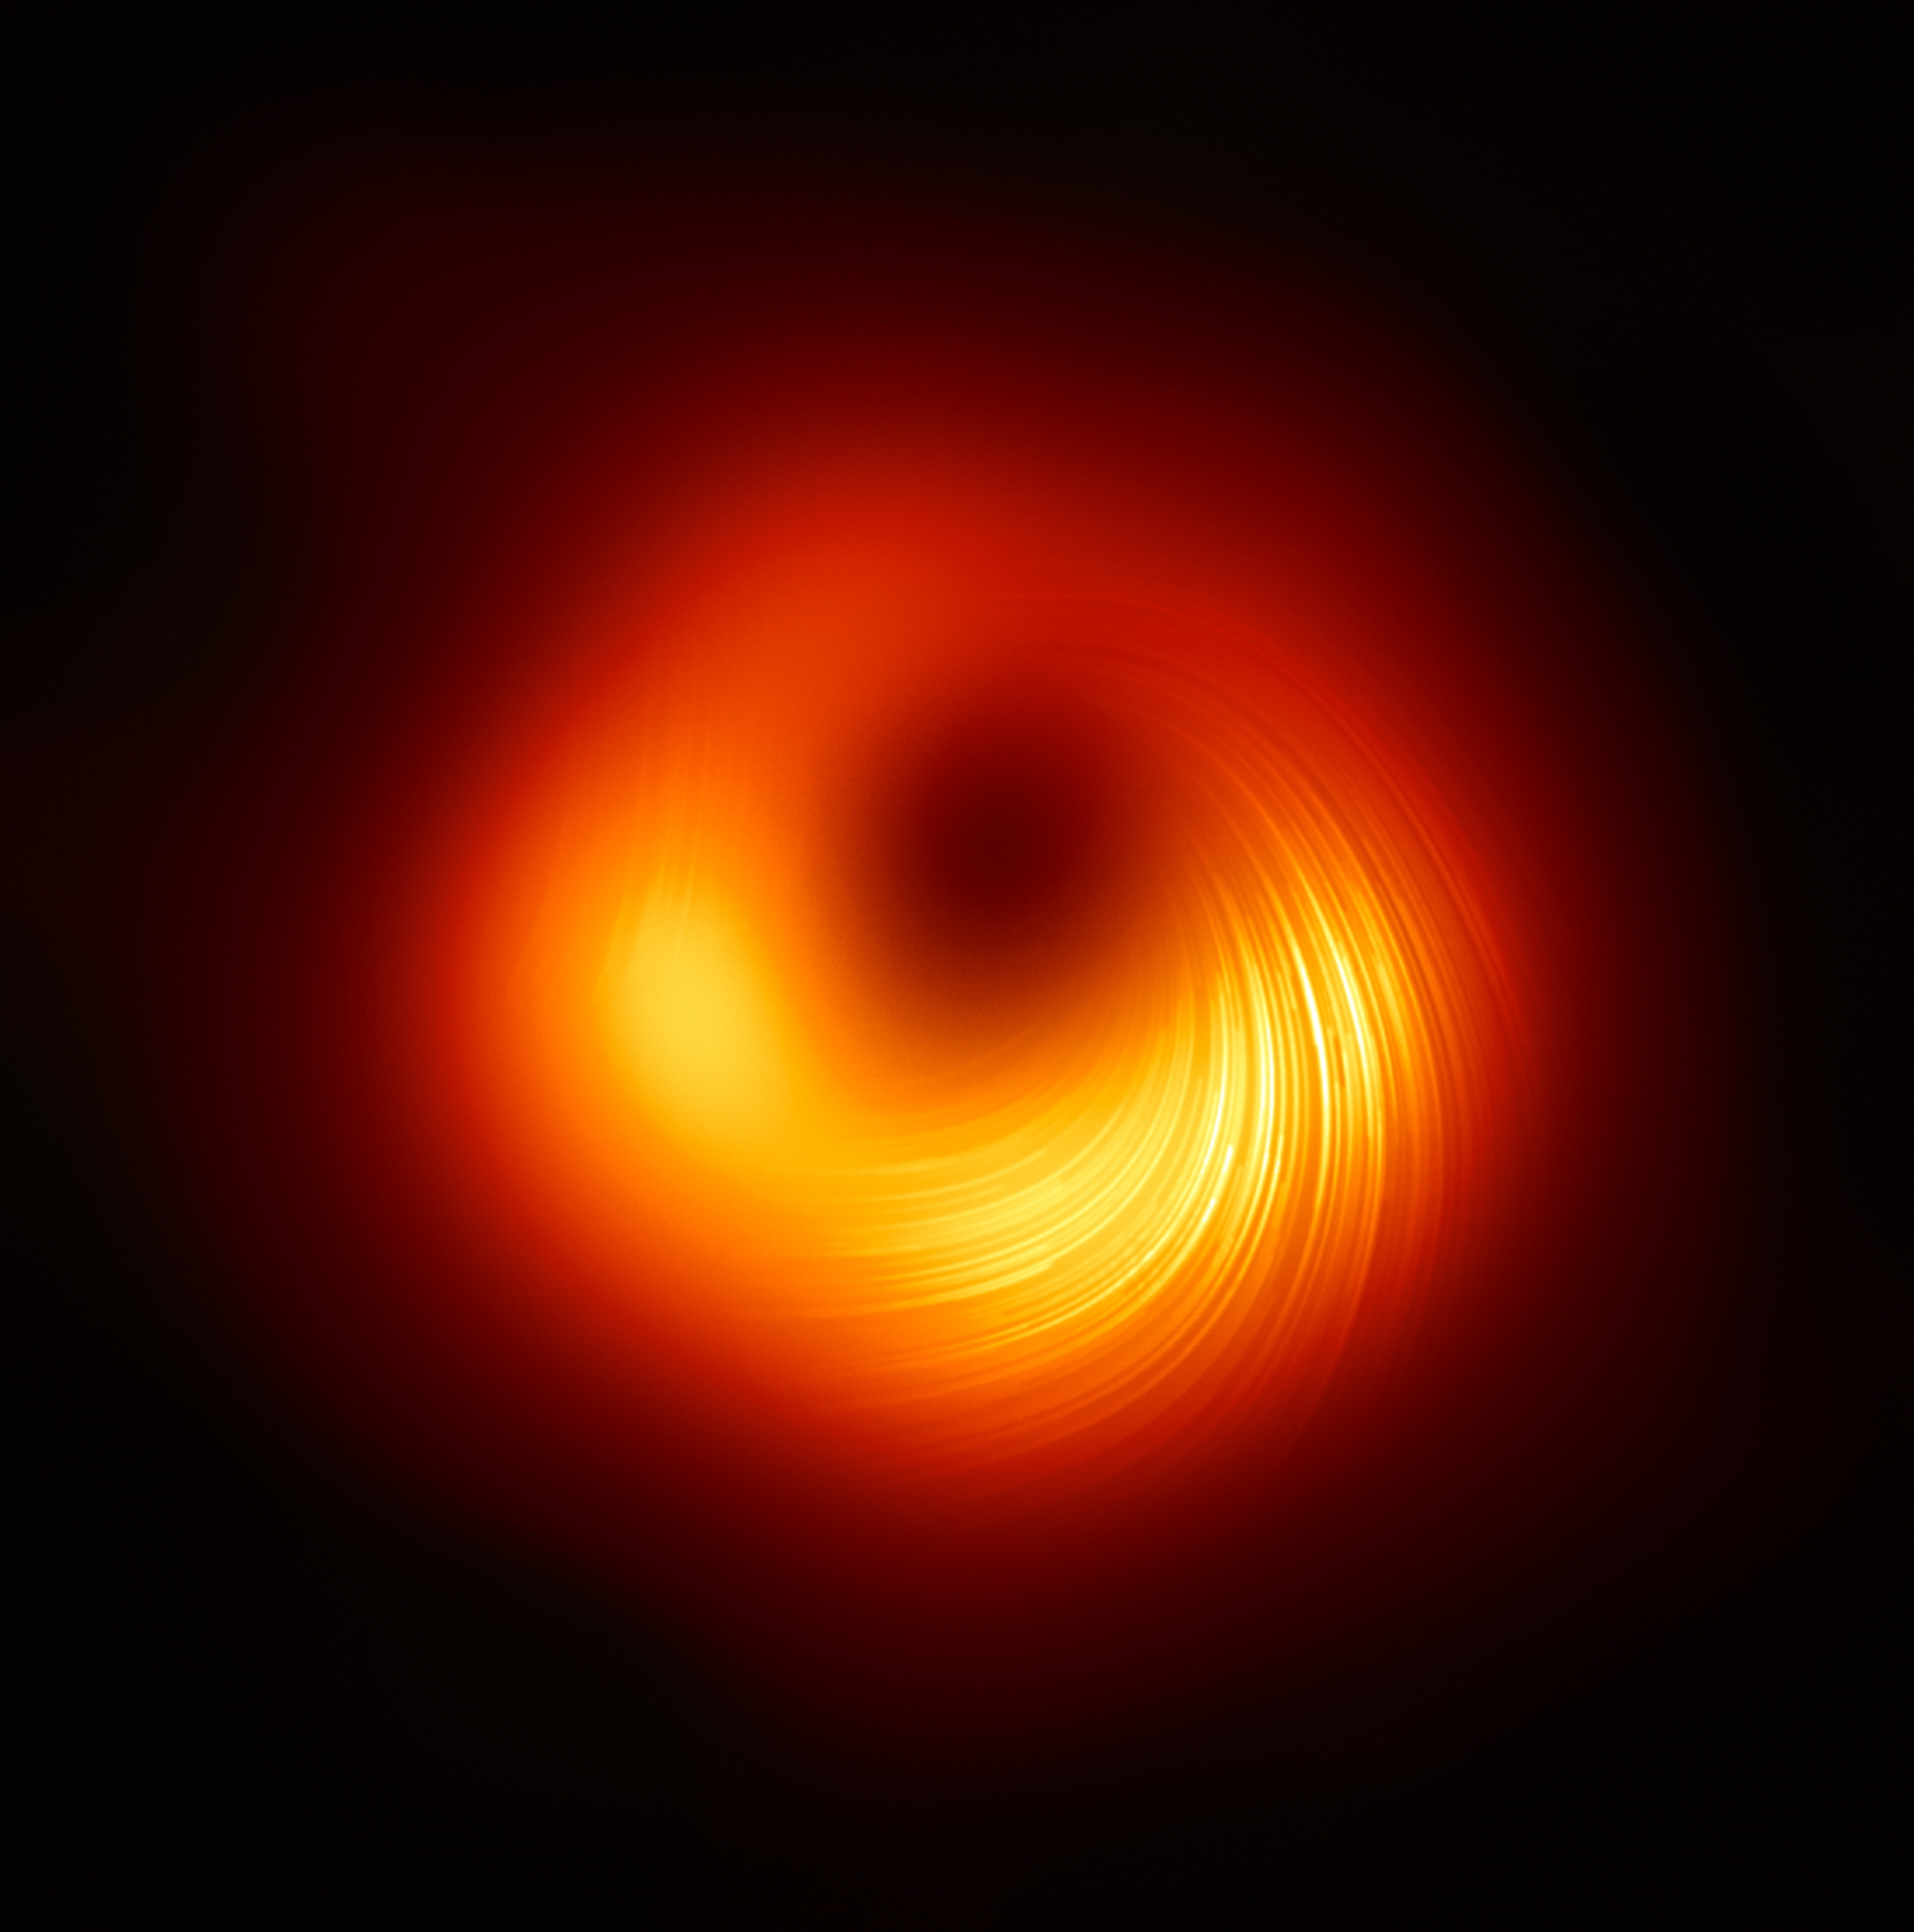 초대질량블랙홀의 편광 영상